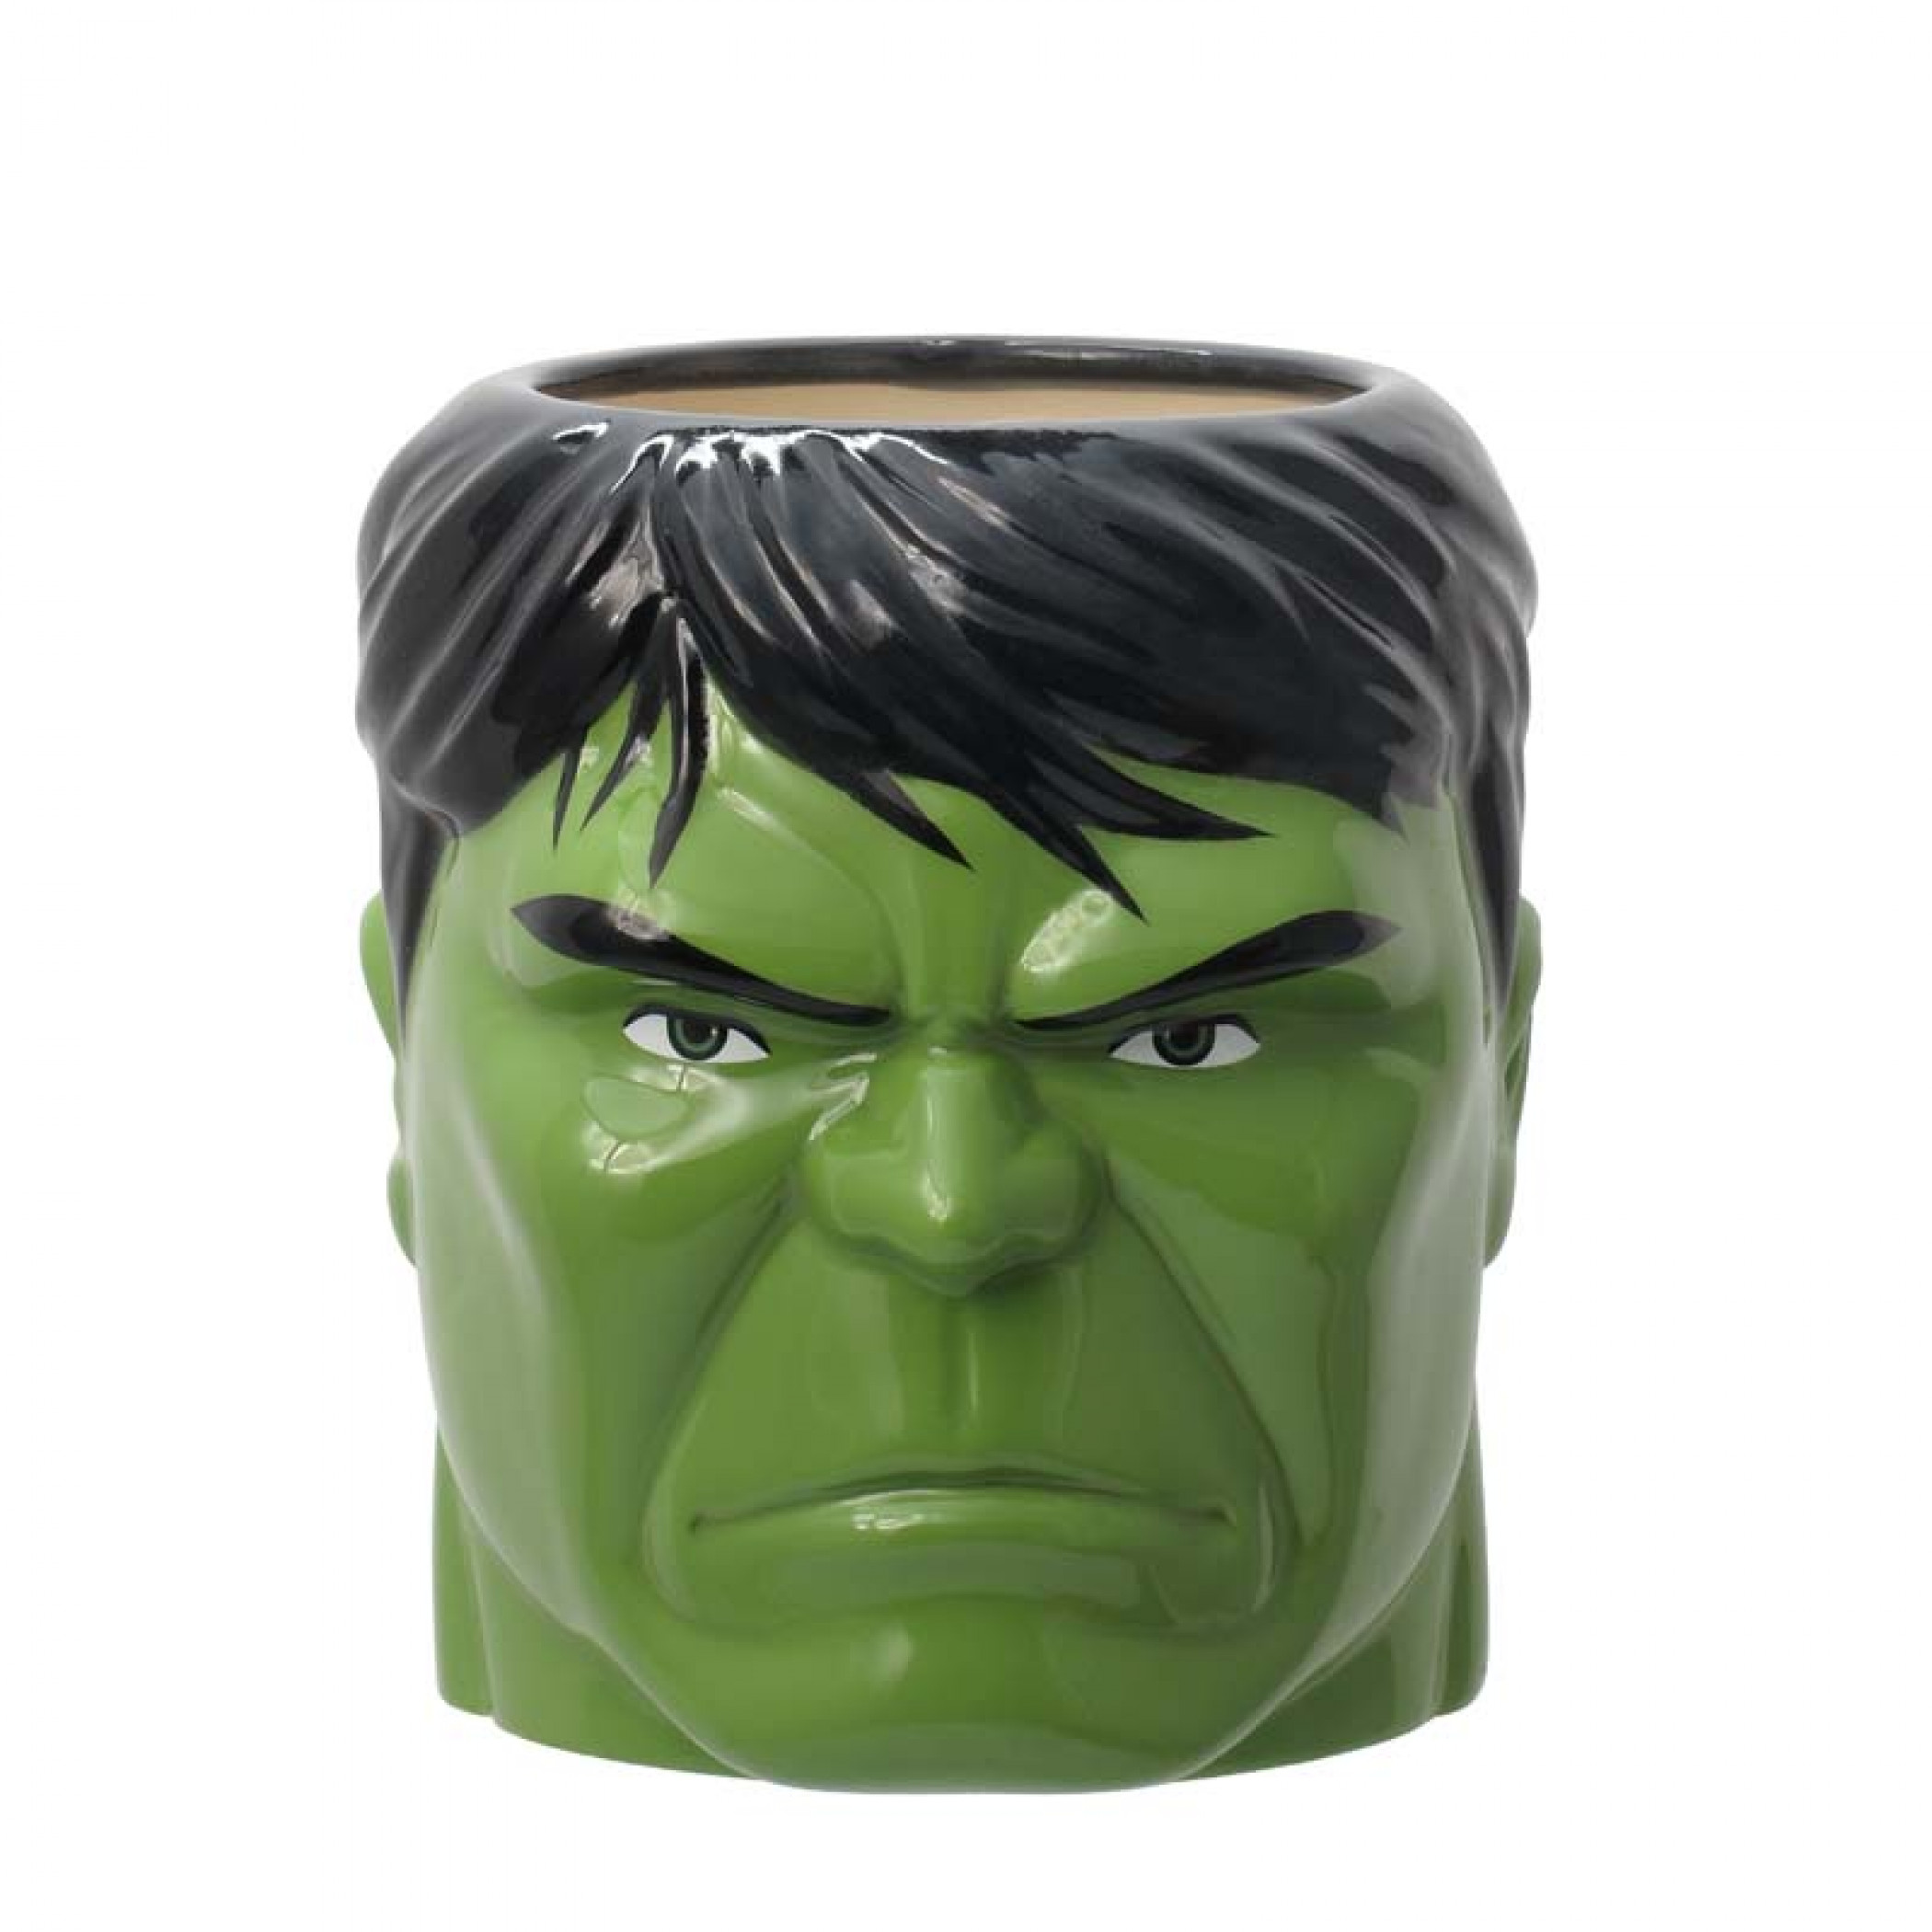 The Incredible Hulk Sculpted 16oz Ceramic Mug